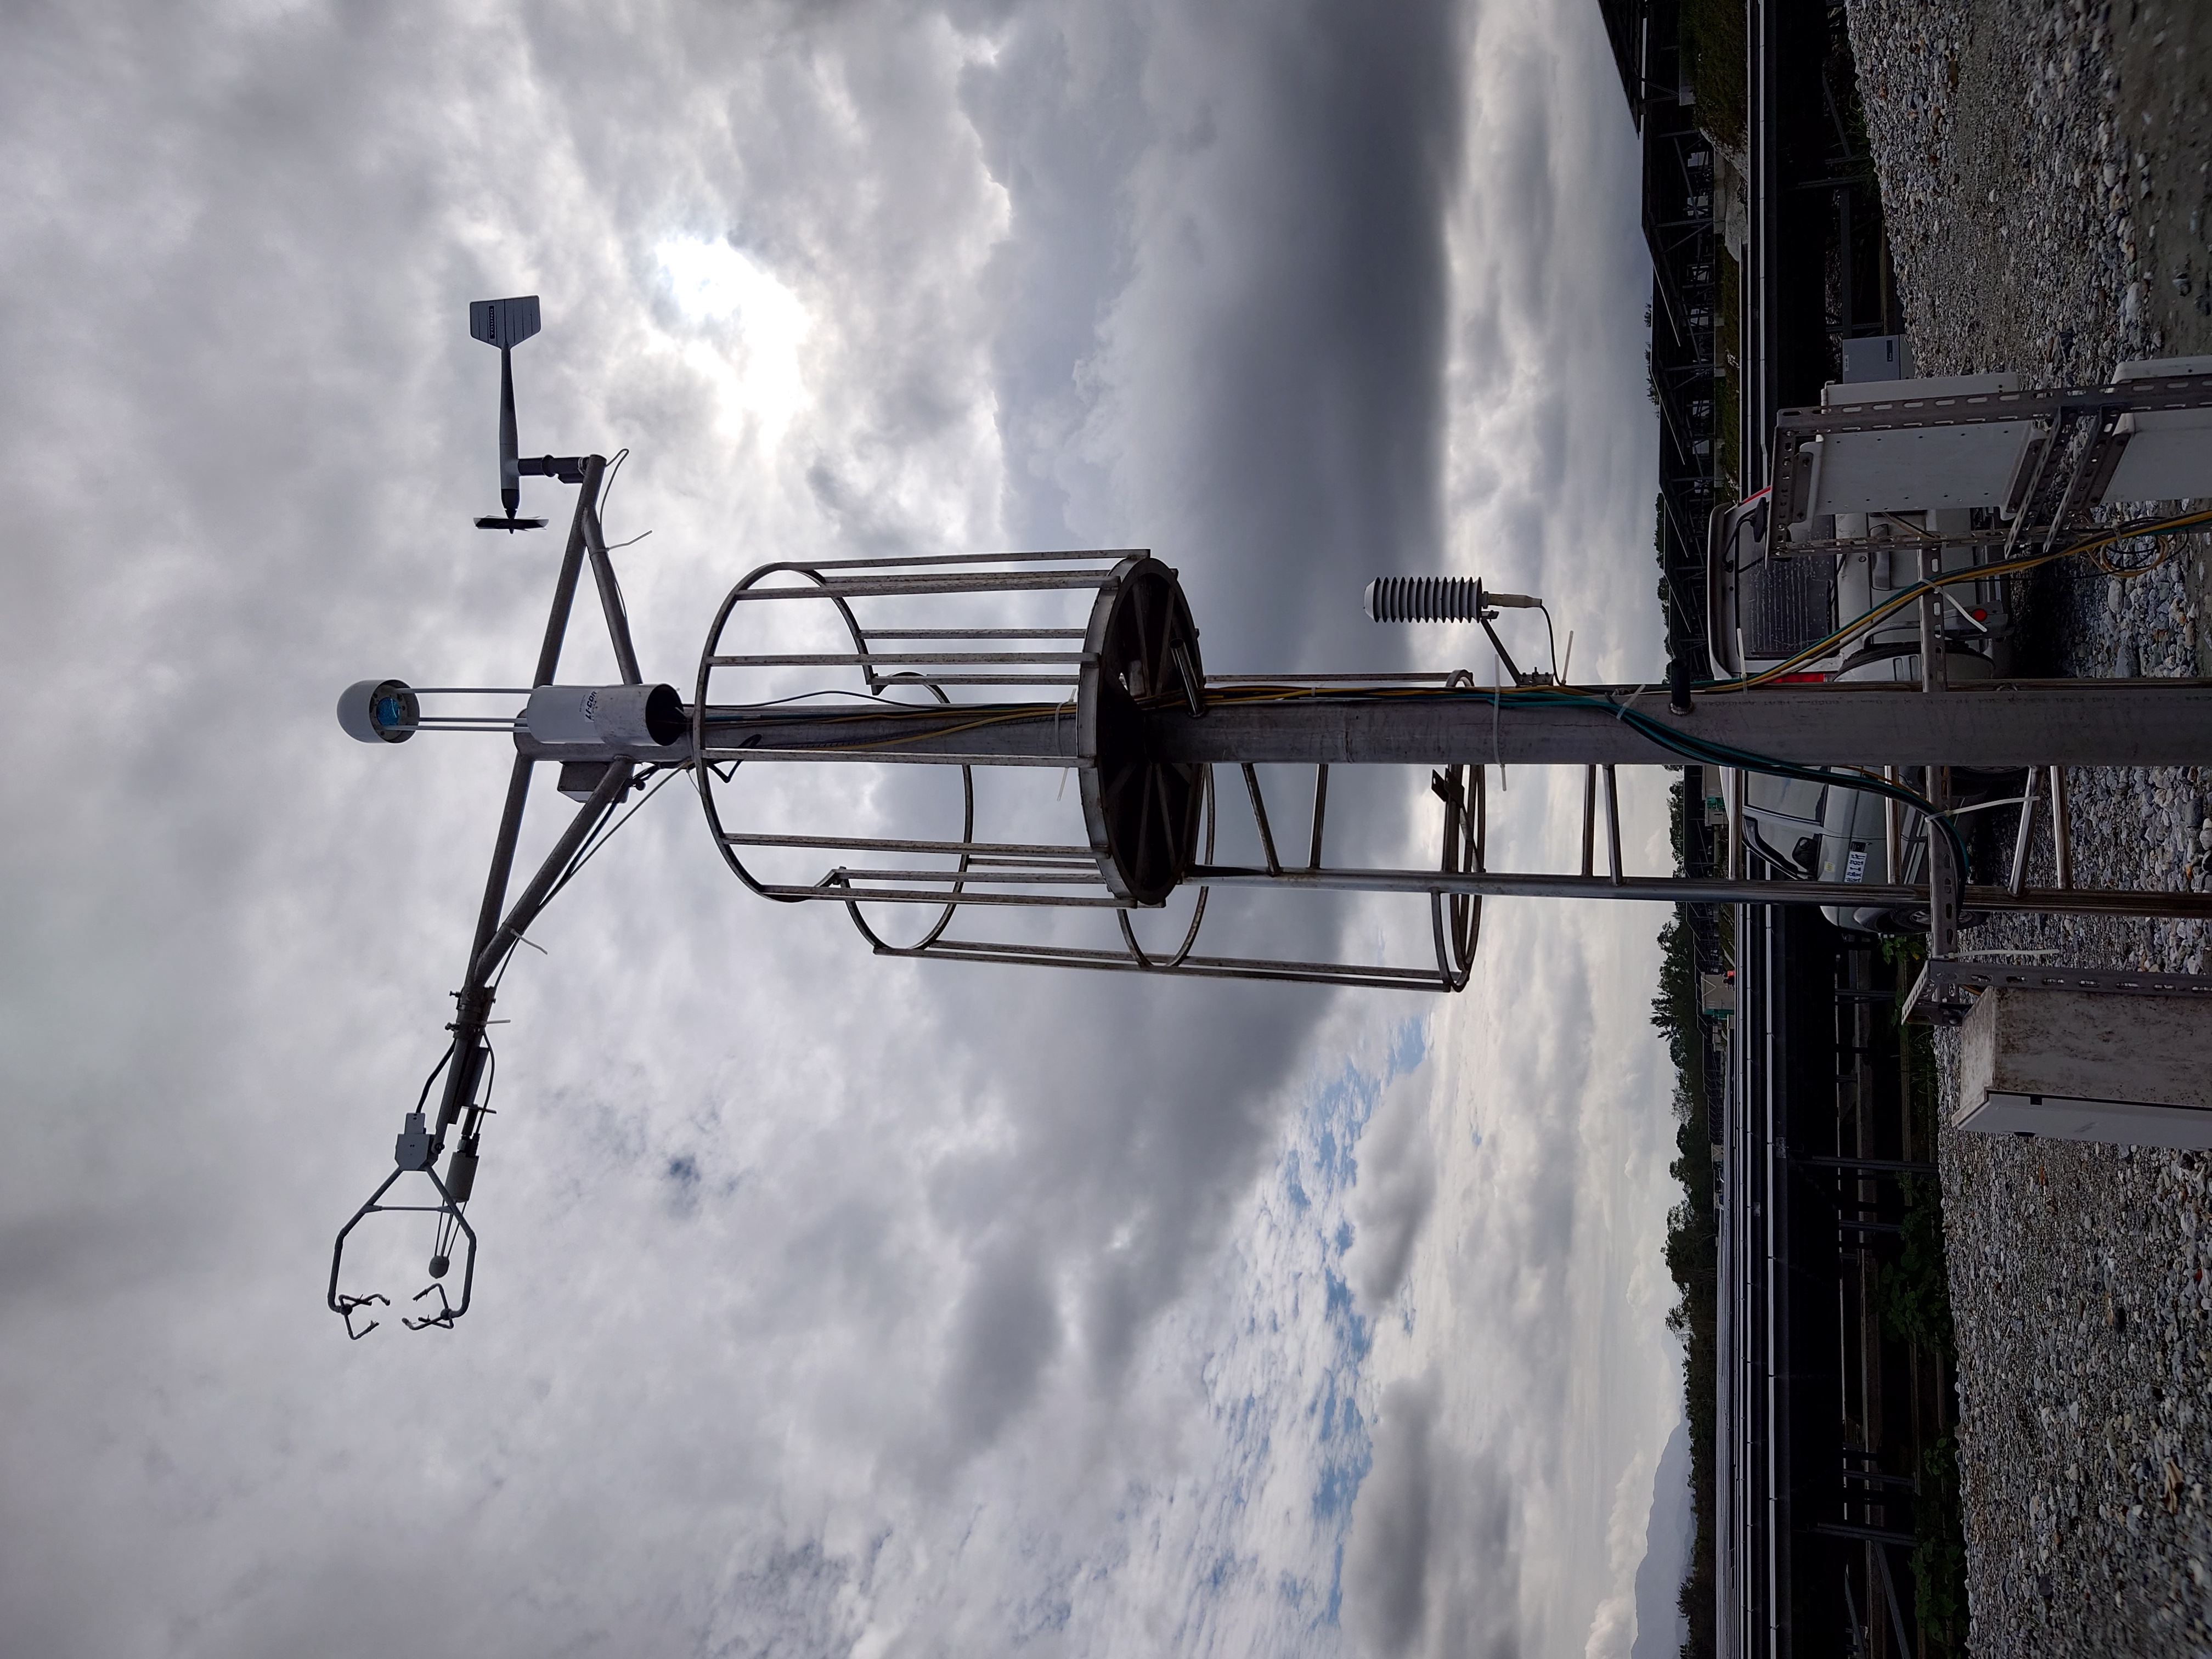 測量多種環境參數與溫室氣體通量儀器用的鐵塔。